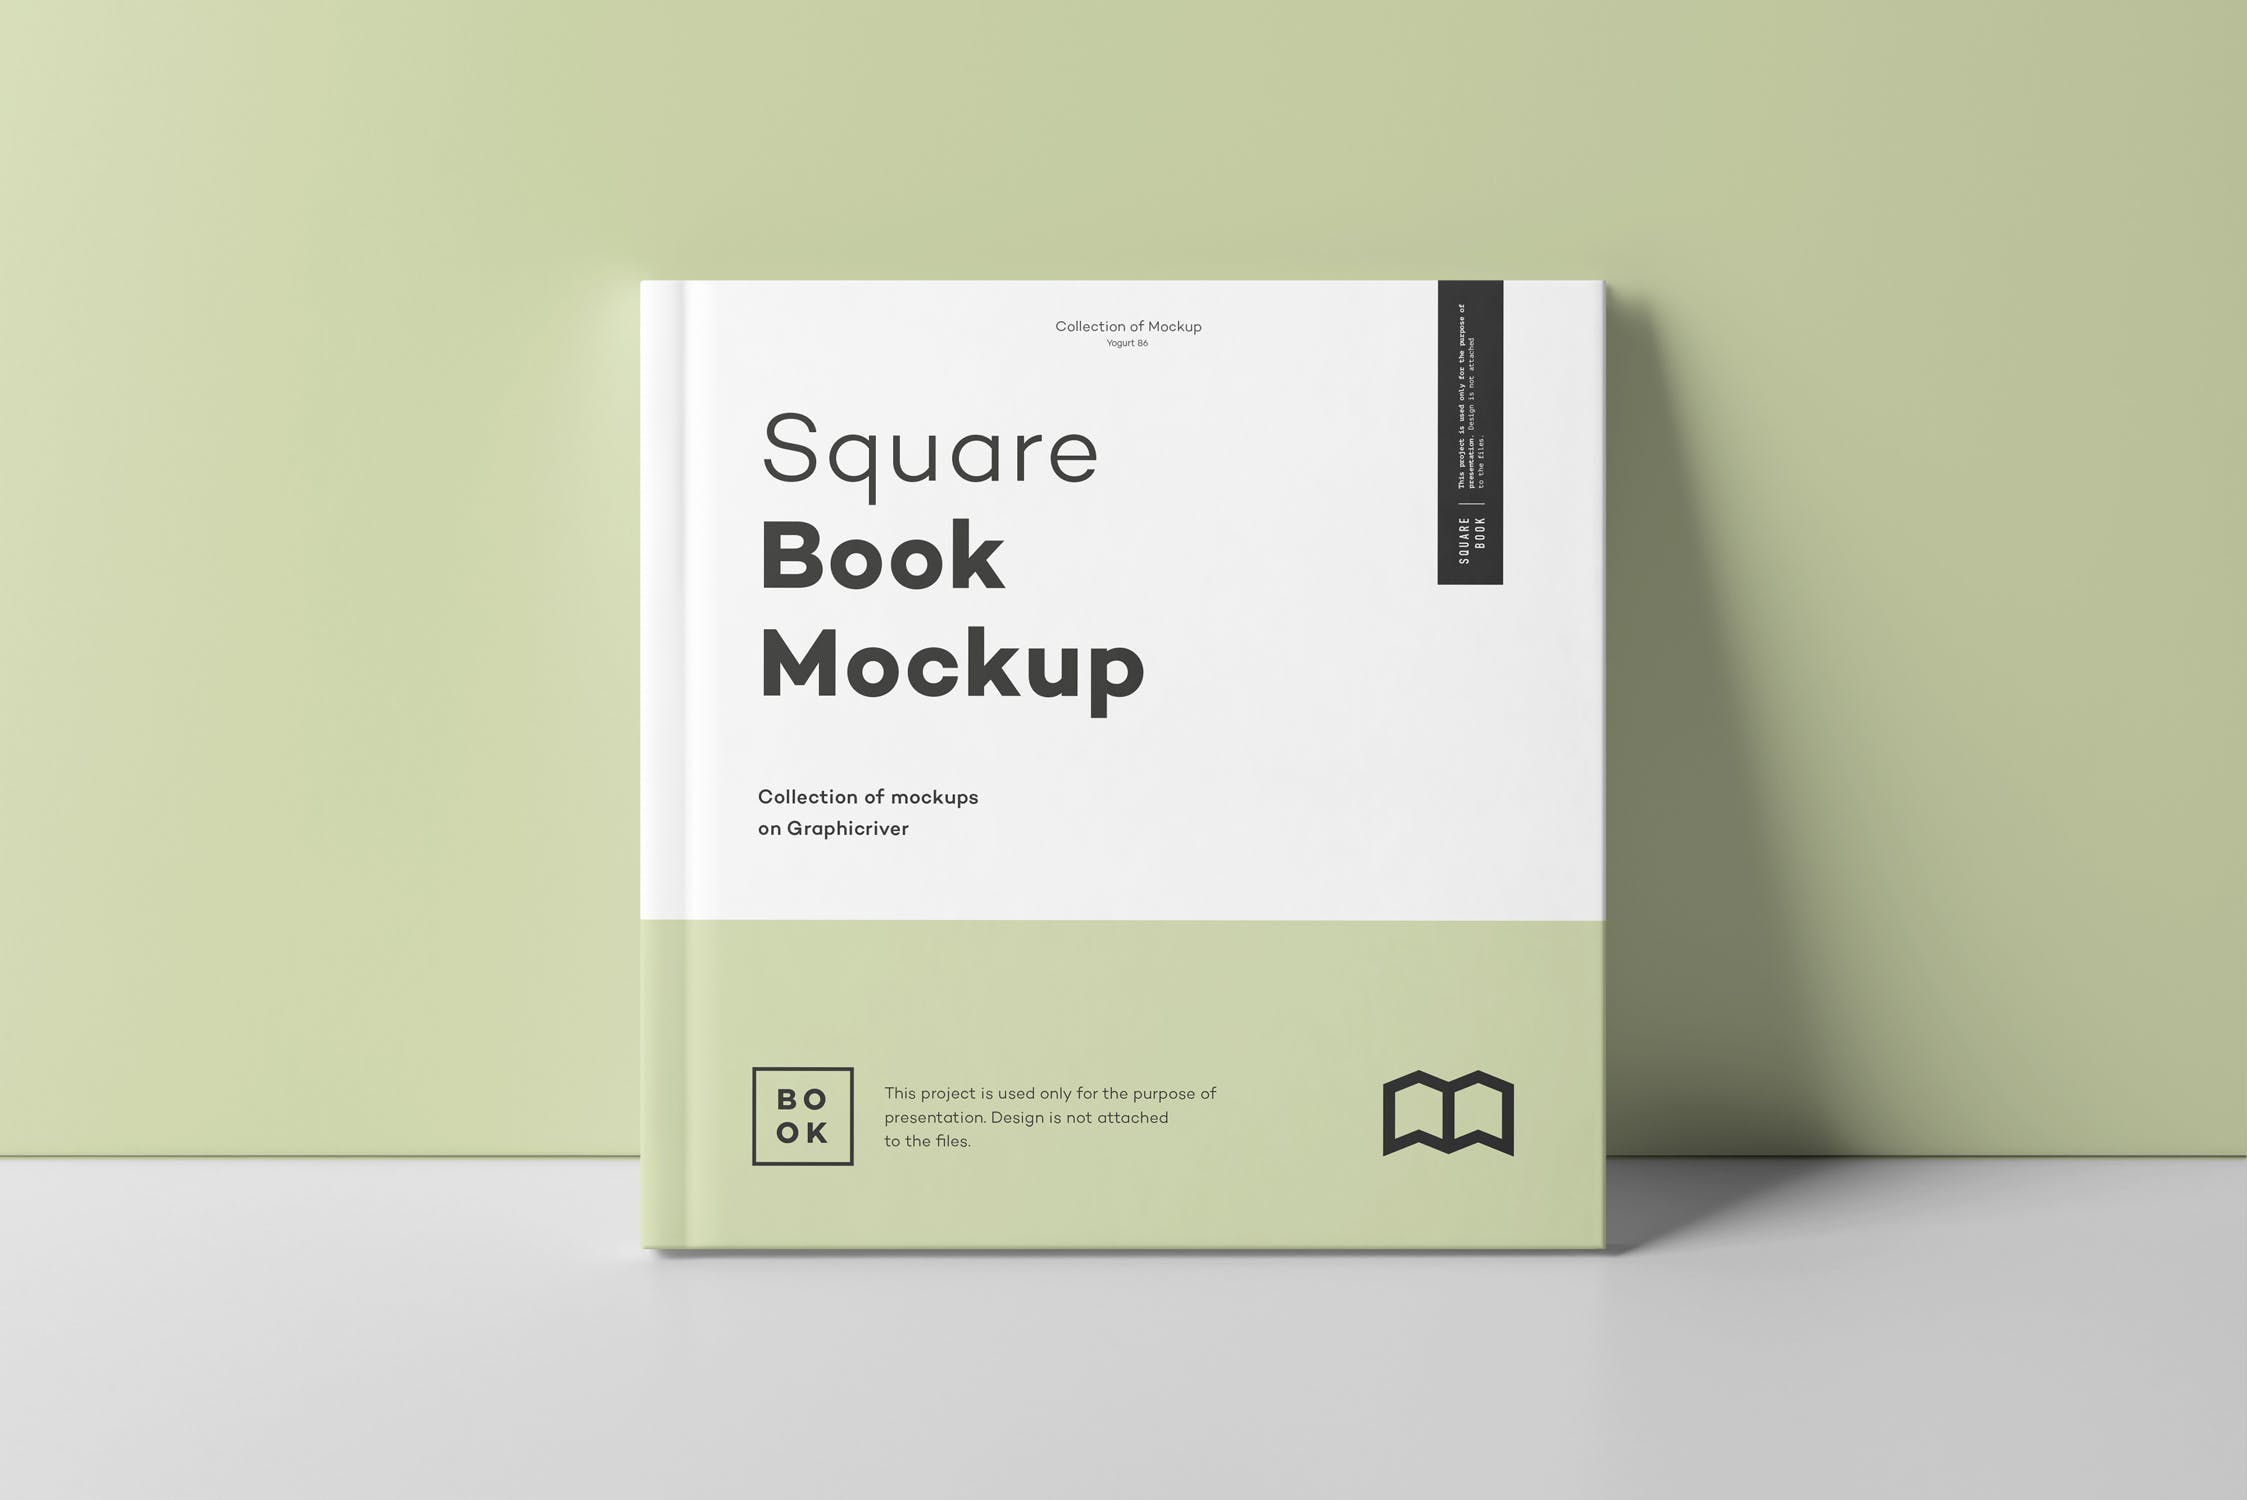 方形精装图书封面&内页版式设计预览样机 Square Book Mock up 2插图(9)